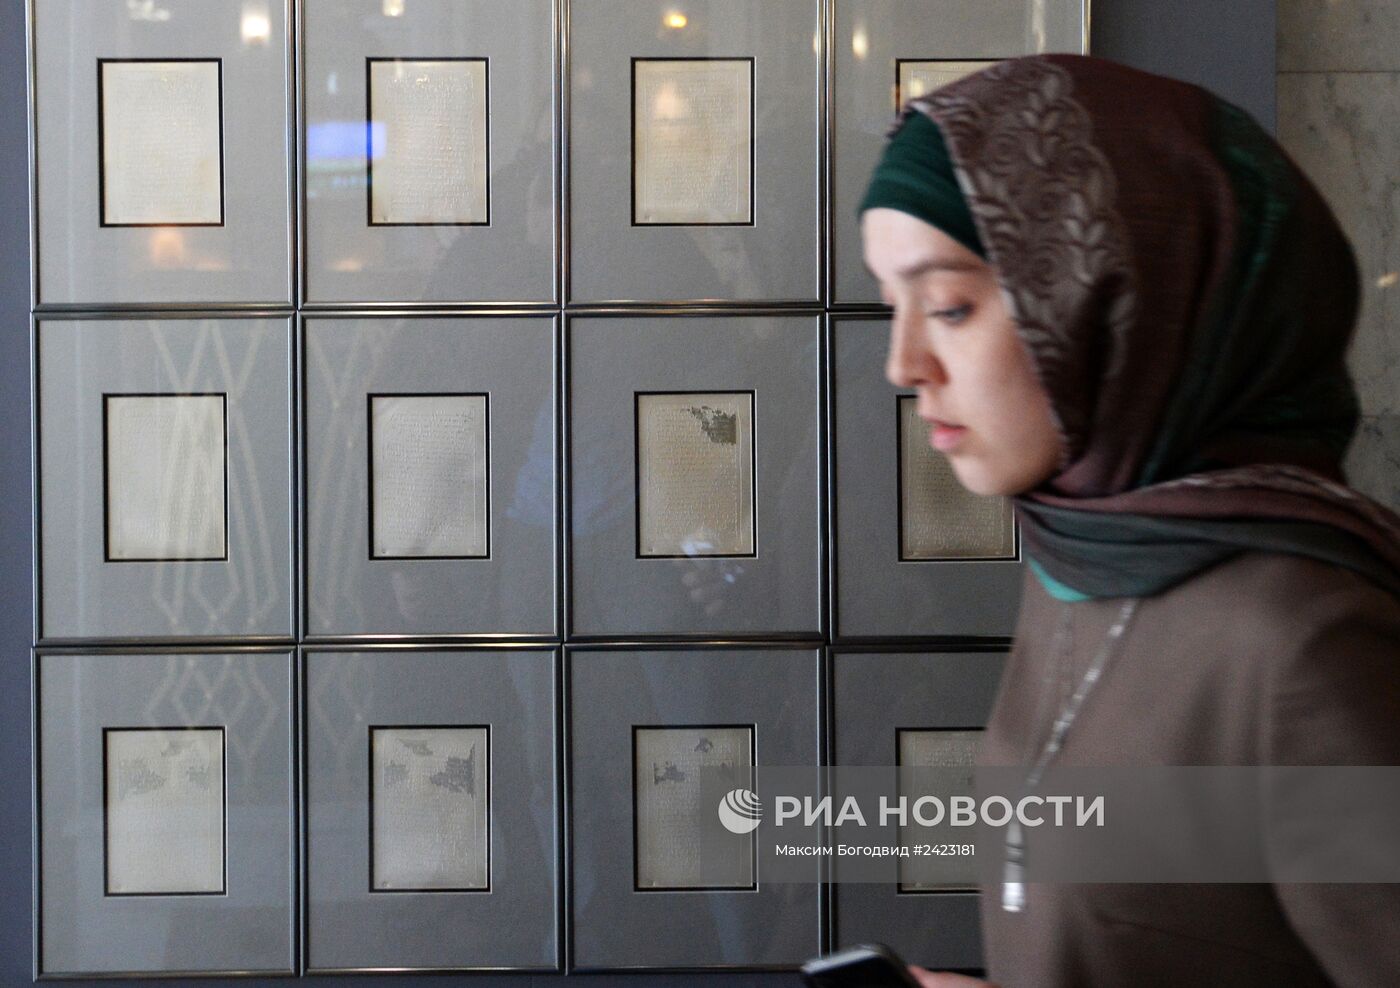 Выставка "Серебряный Коран" в Казани